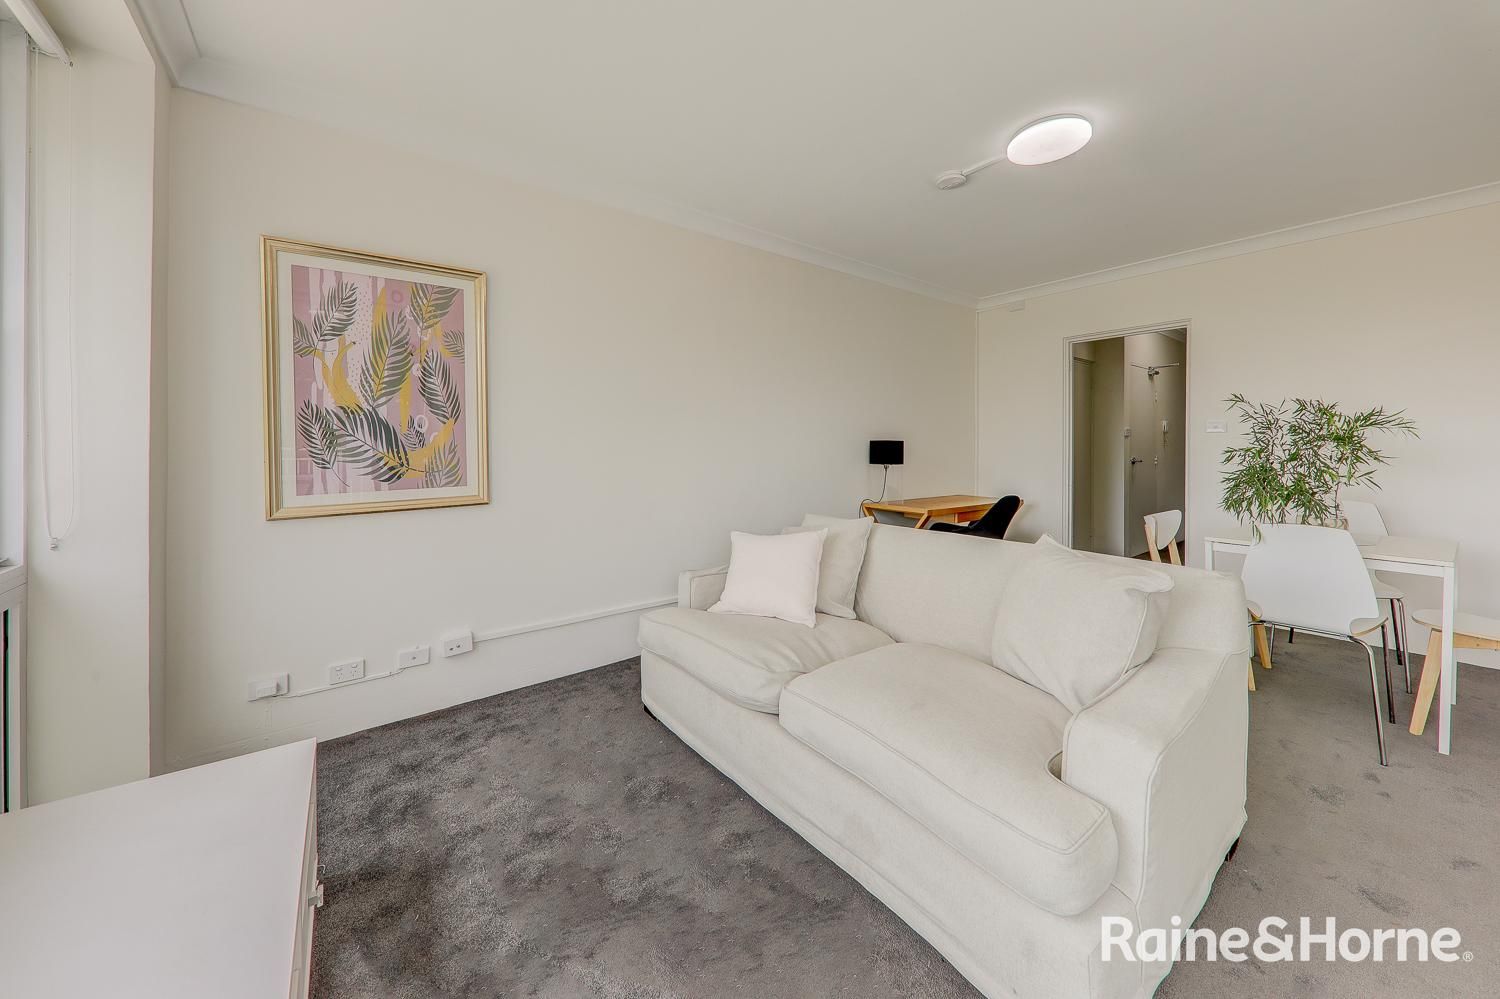 2 bedrooms Apartment / Unit / Flat in U/40 Willis Street KINGSFORD NSW, 2032